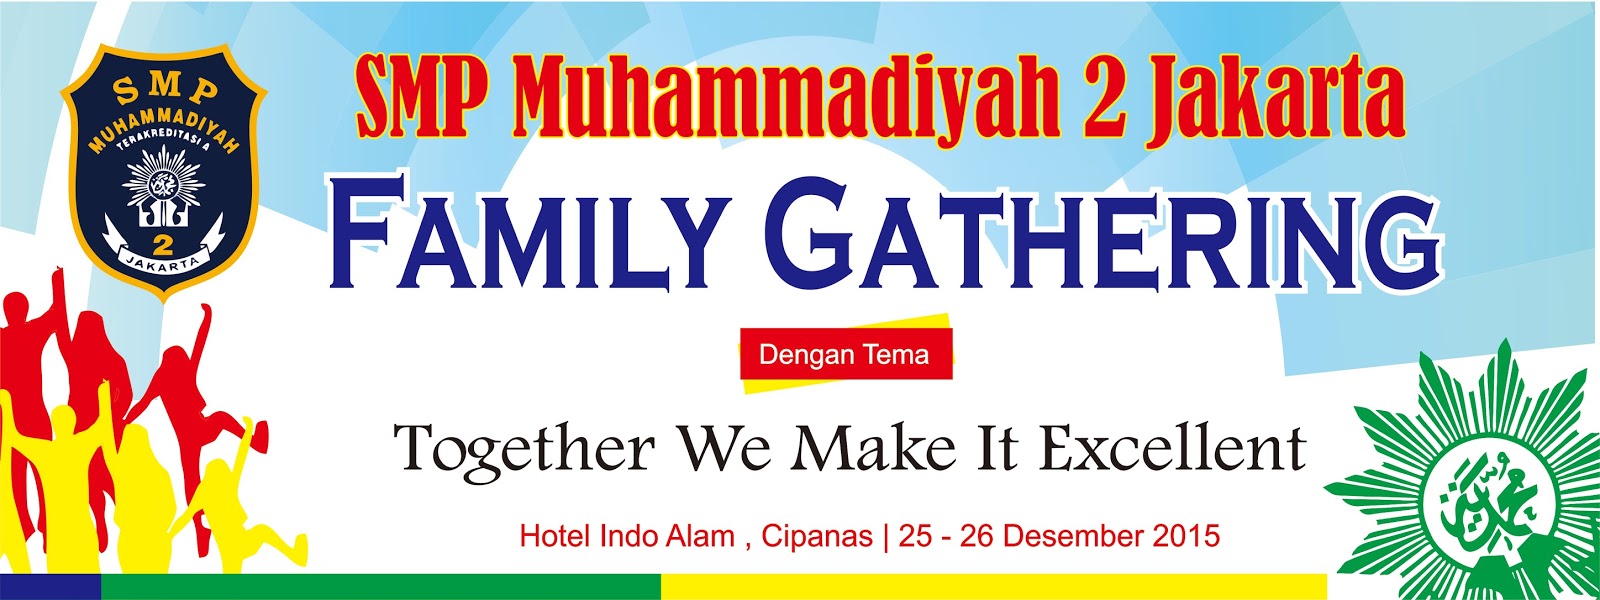 Desain Banner Family Gathering SMP Muhammadiyah 2 Jakarta 